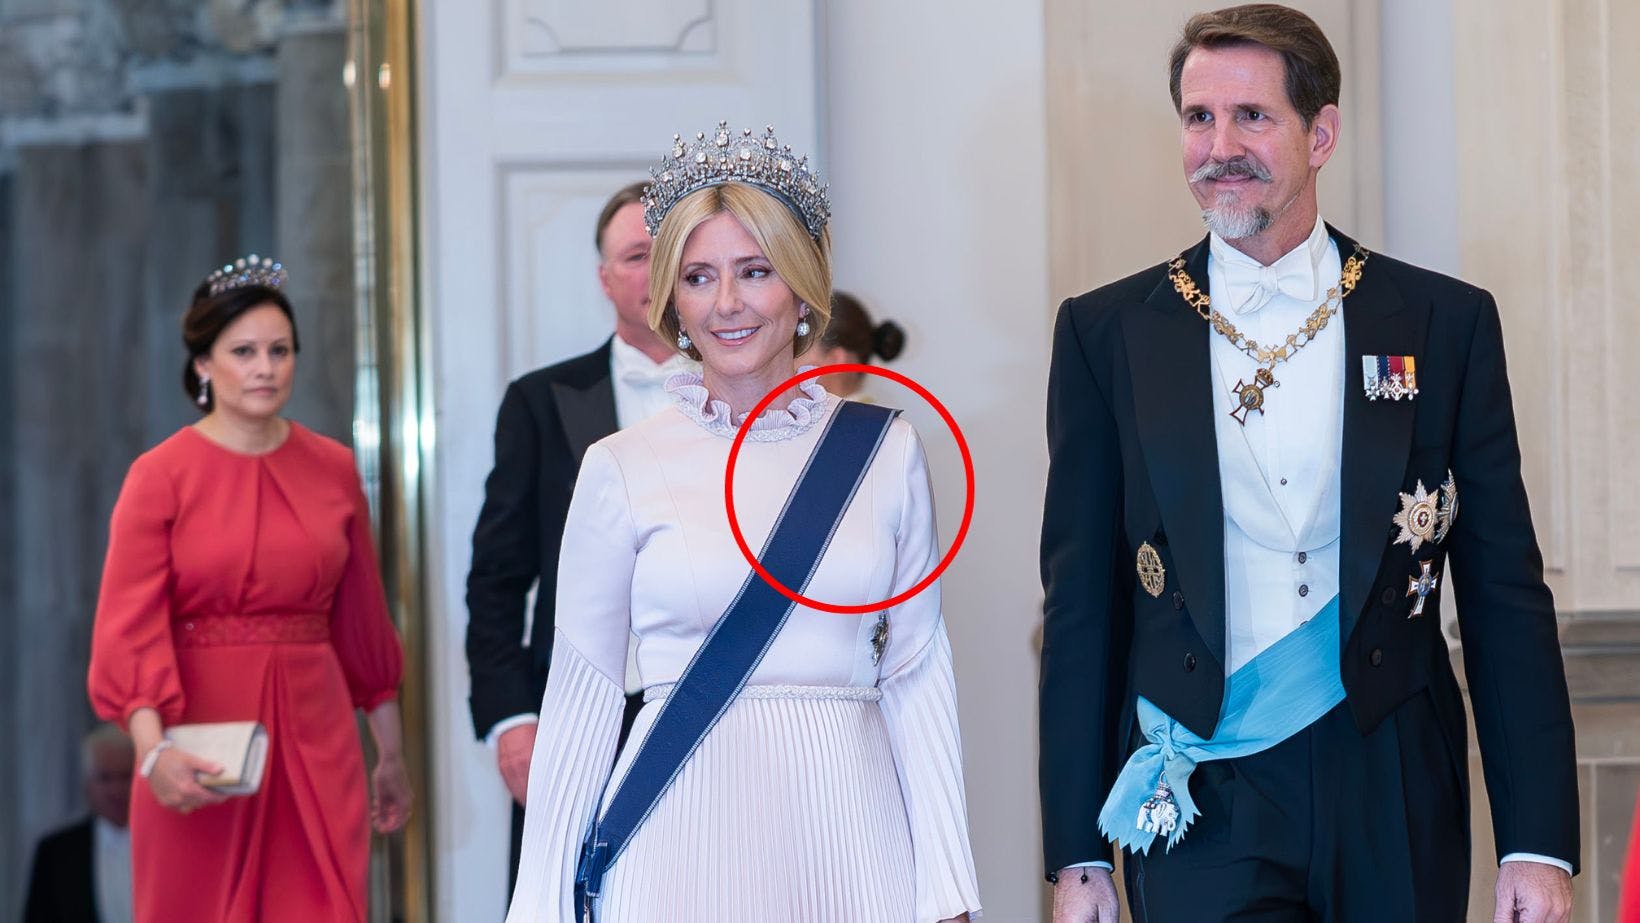 Venstre eller højre skulder? Det var spørgsmålet for kronprinsesse Marie-Chantal, da hun skulle iføre sig ordensbåndet. Det viste sig dog, at hun efterfølgende måtte rette på det.